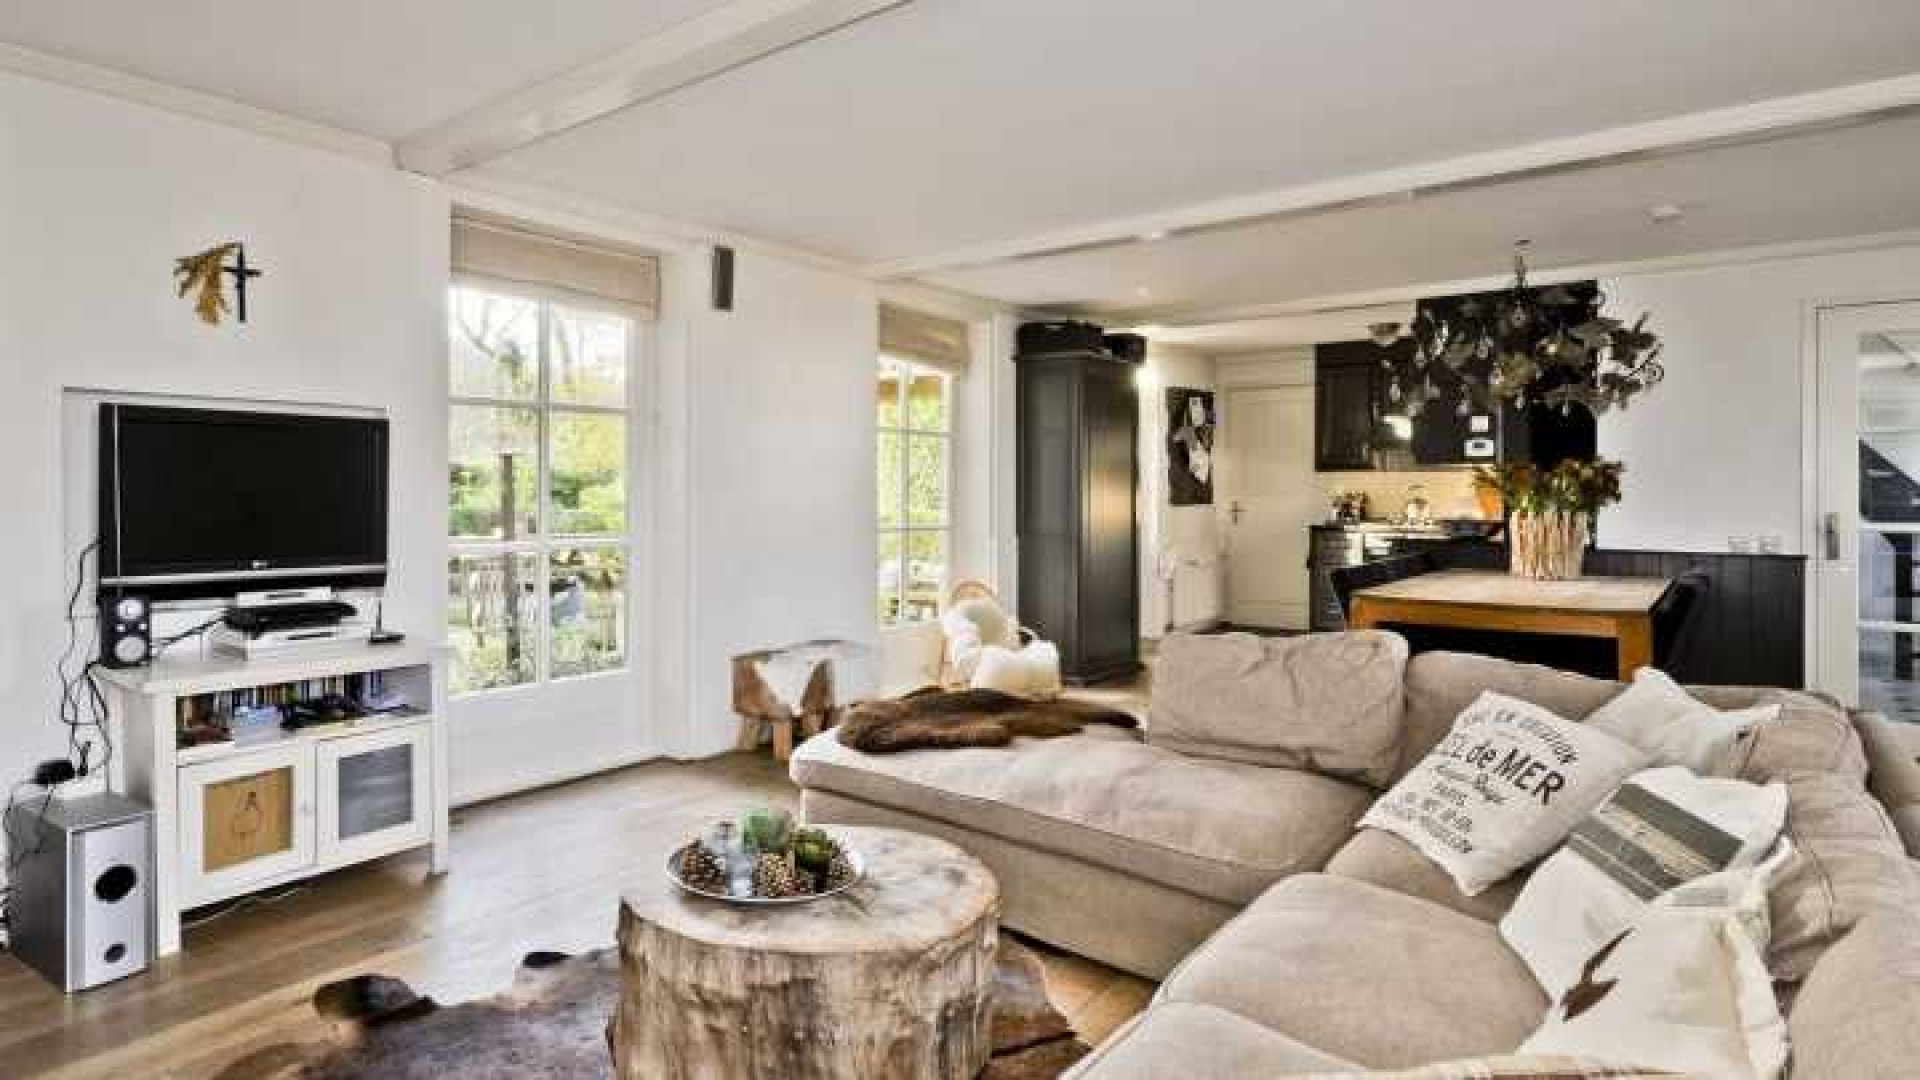 Binnenkijken in het totaal door ontwerper Piet Boon gerestylde huis van Henny Huisman. Zie foto's 29